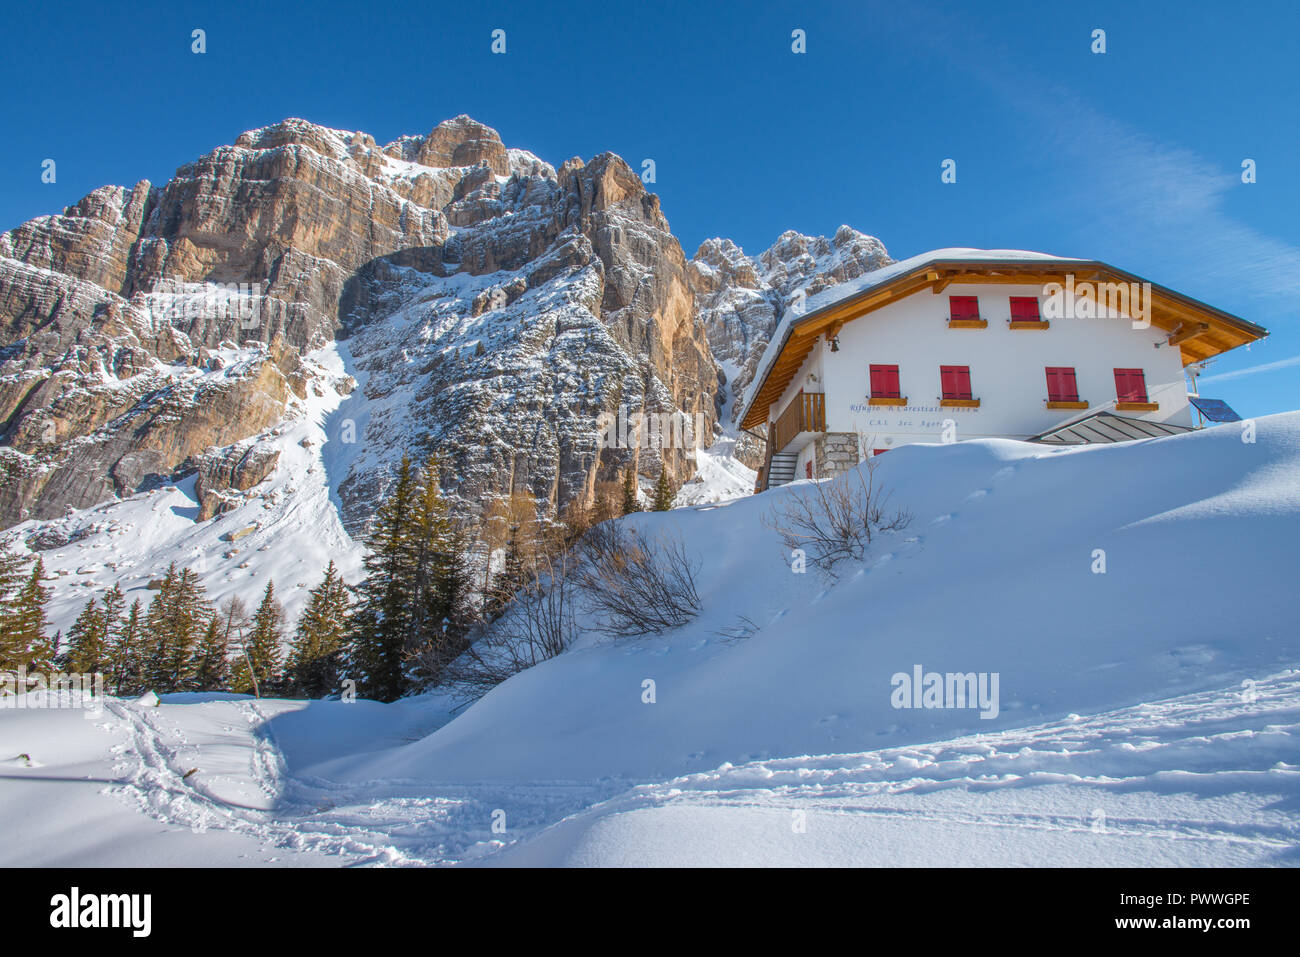 Rifugio Bruto Carestiato, refuge de montagne dans les Alpes italiennes. Hiver merveilleux, le jour de l'an sur la neige. D'imposantes montagnes, forêt de pins. Banque D'Images